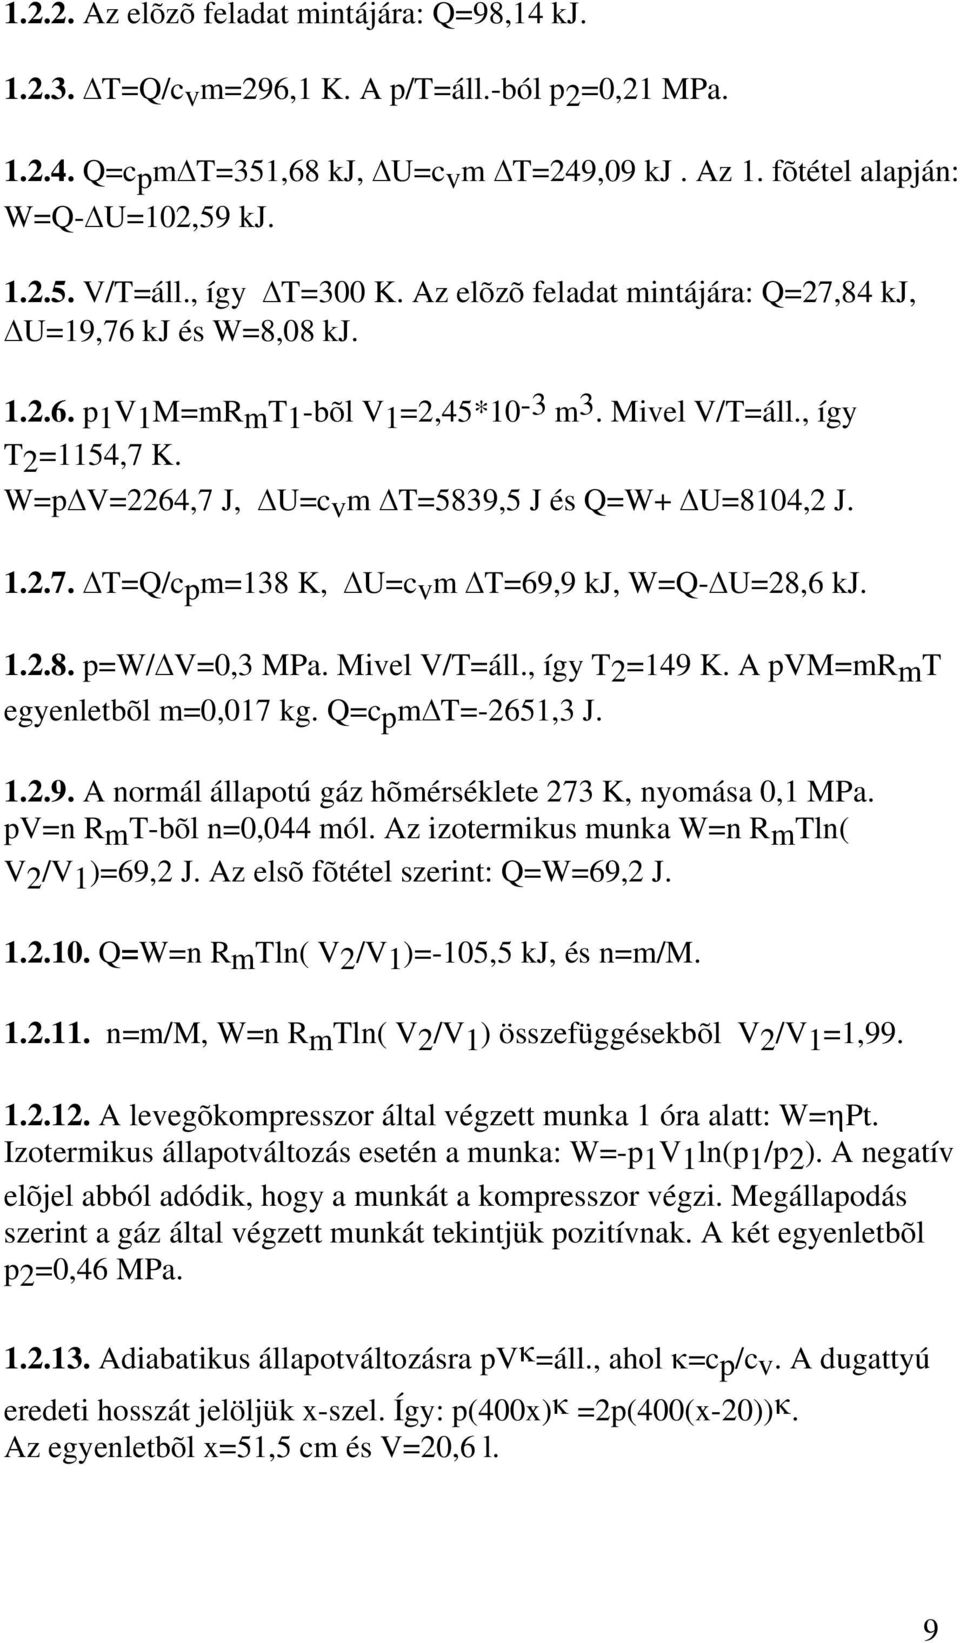 ..8. p=w/ V=0,3 MPa. Mivel V/T=áll., így T=49 K. A pvm=mrmt egyenletbõl m=0,07 kg. Q=cpm T=-65,3 J...9. A normál állapotú gáz hõmérséklete 73 K, nyomása 0, MPa. pv=n RmT-bõl n=0,044 mól.